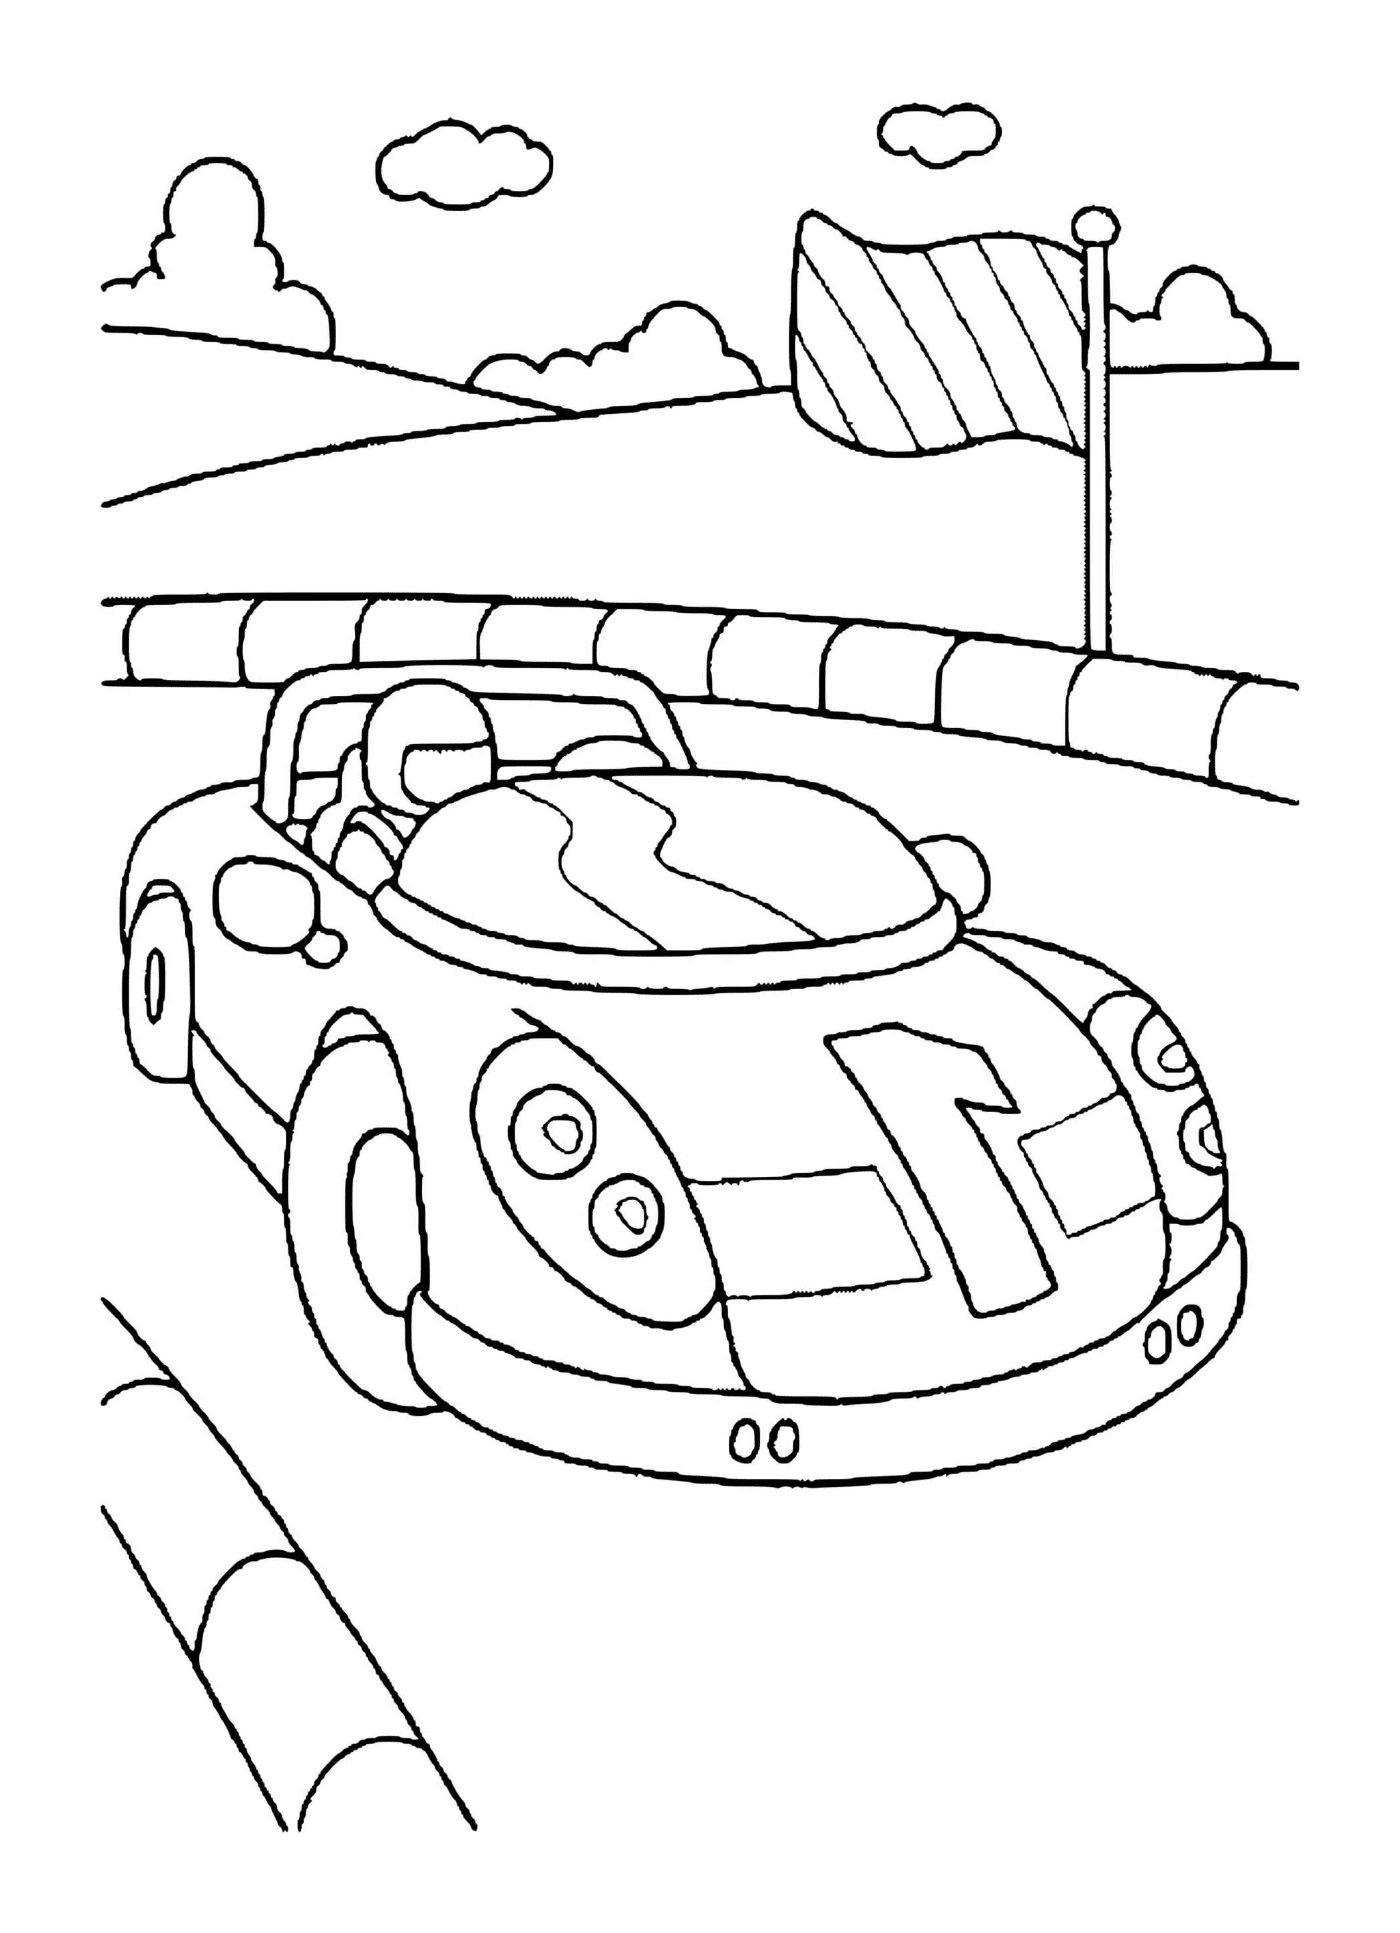  छोटा खेल कार 